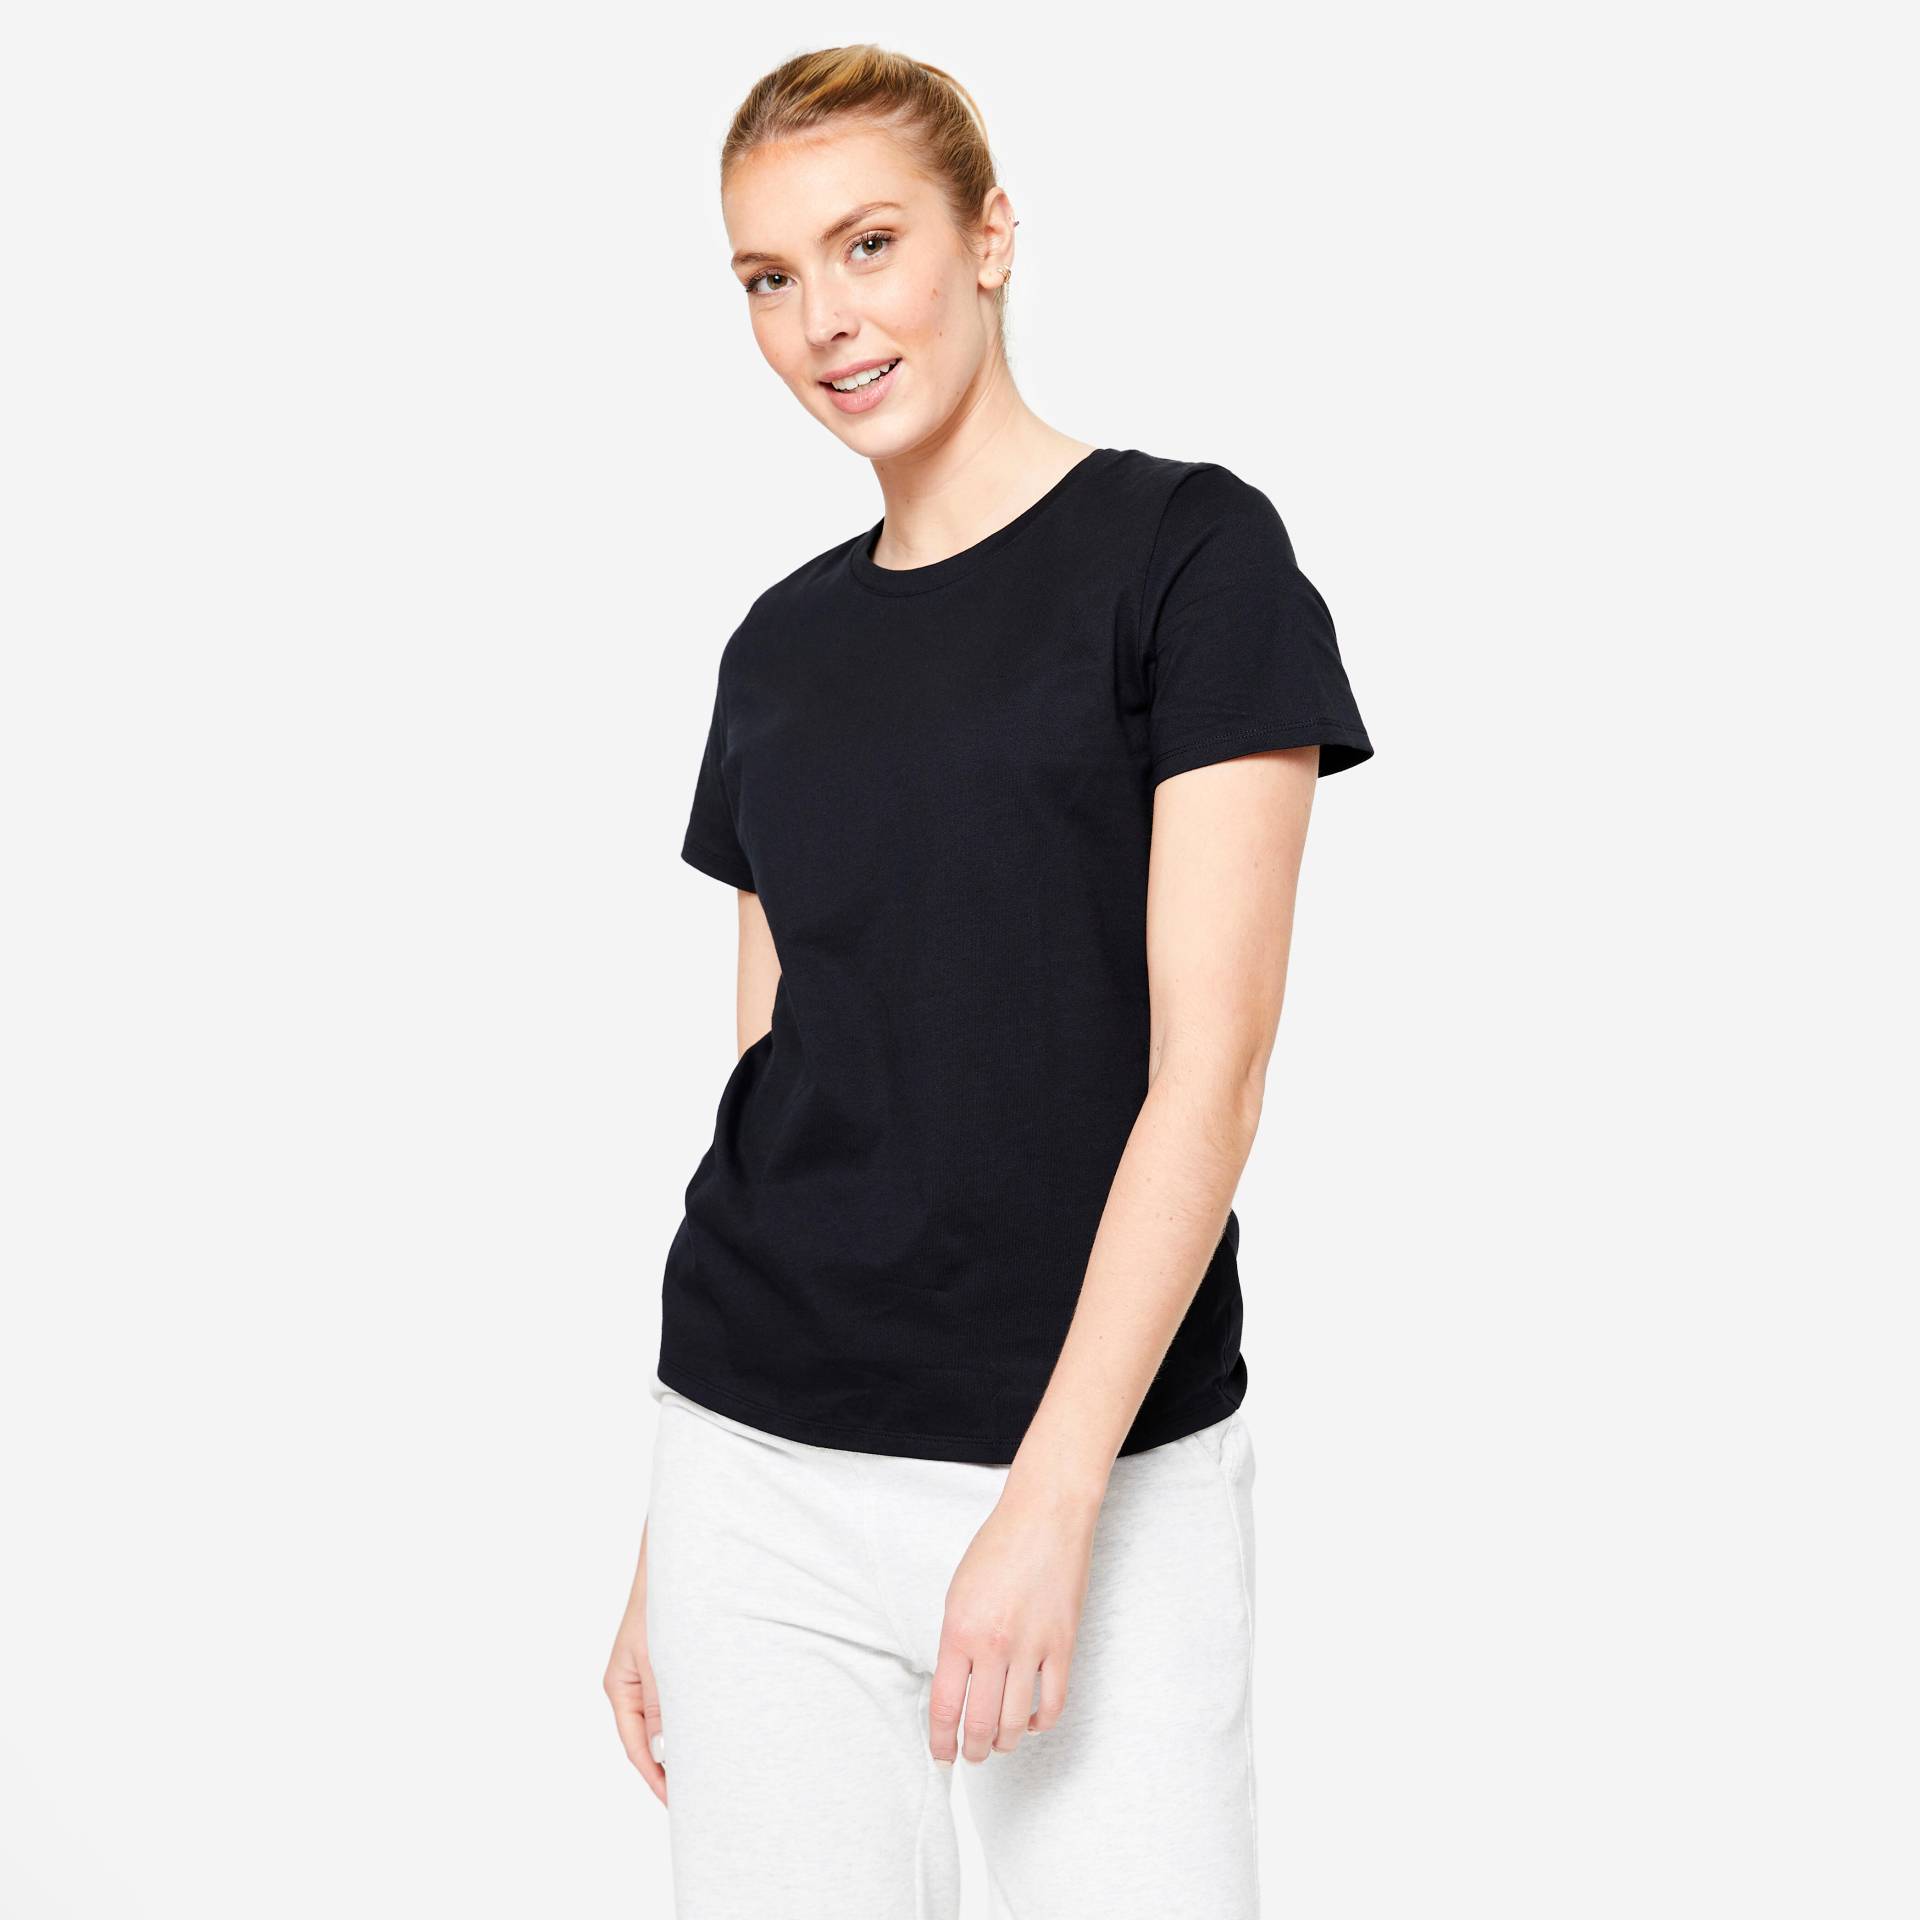 T-shirt Damen - 500 Essentials schwarz von Domyos